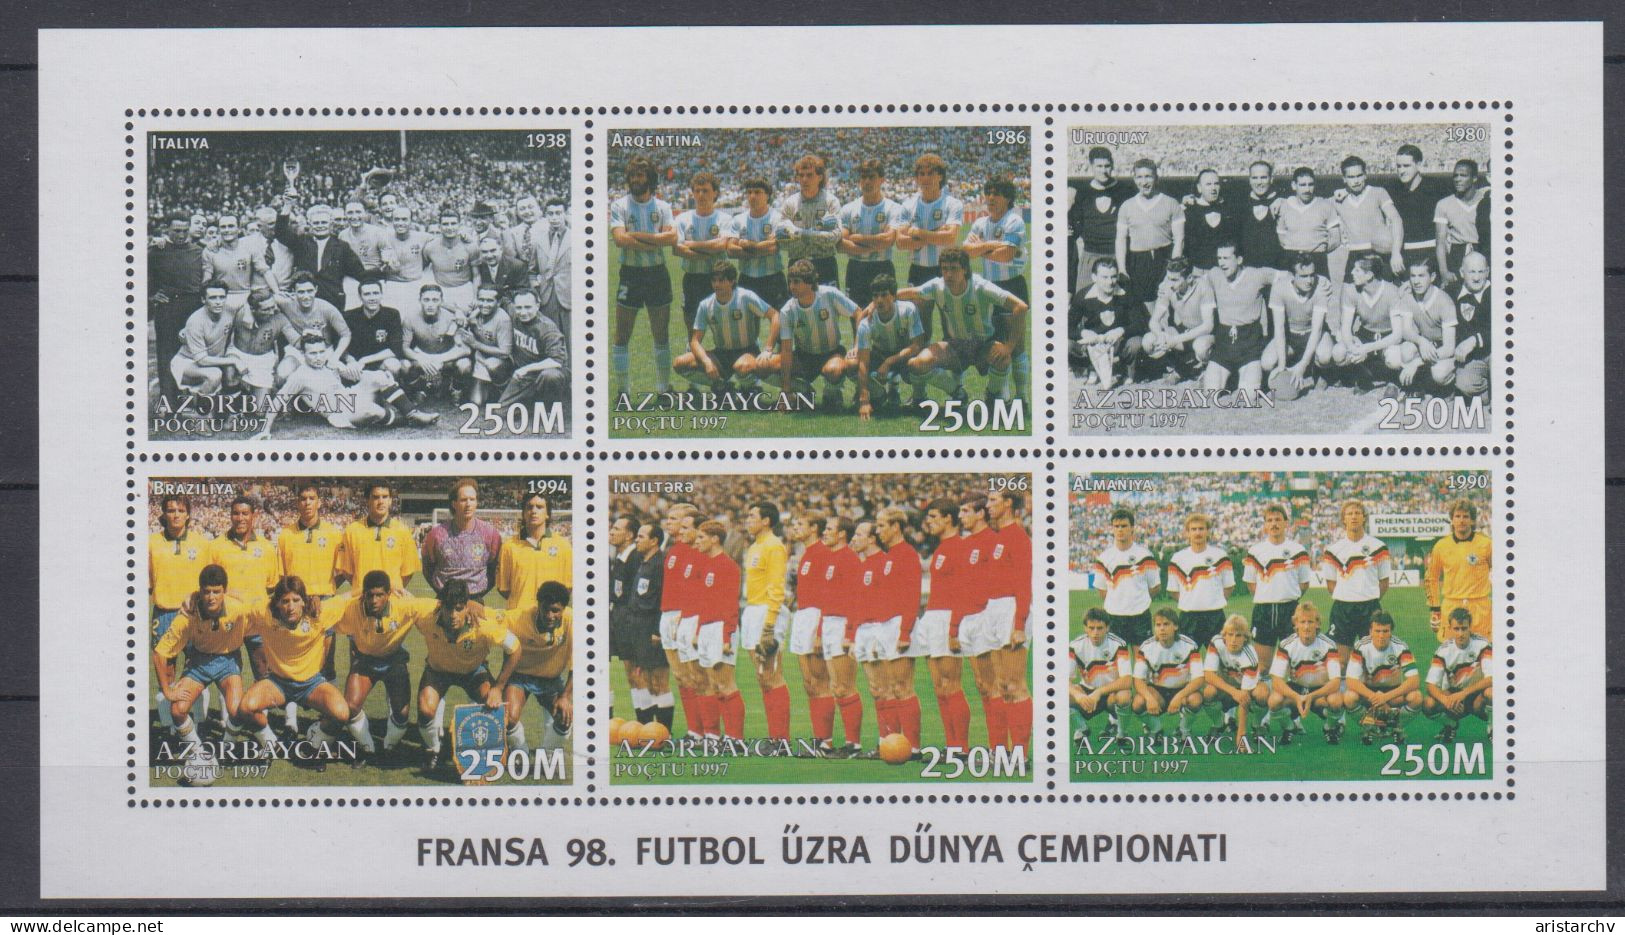 AZERBAIJAN 1998 FOOTBALL WORLD CUP SHEETLET AND S/SHEET - 1998 – Francia